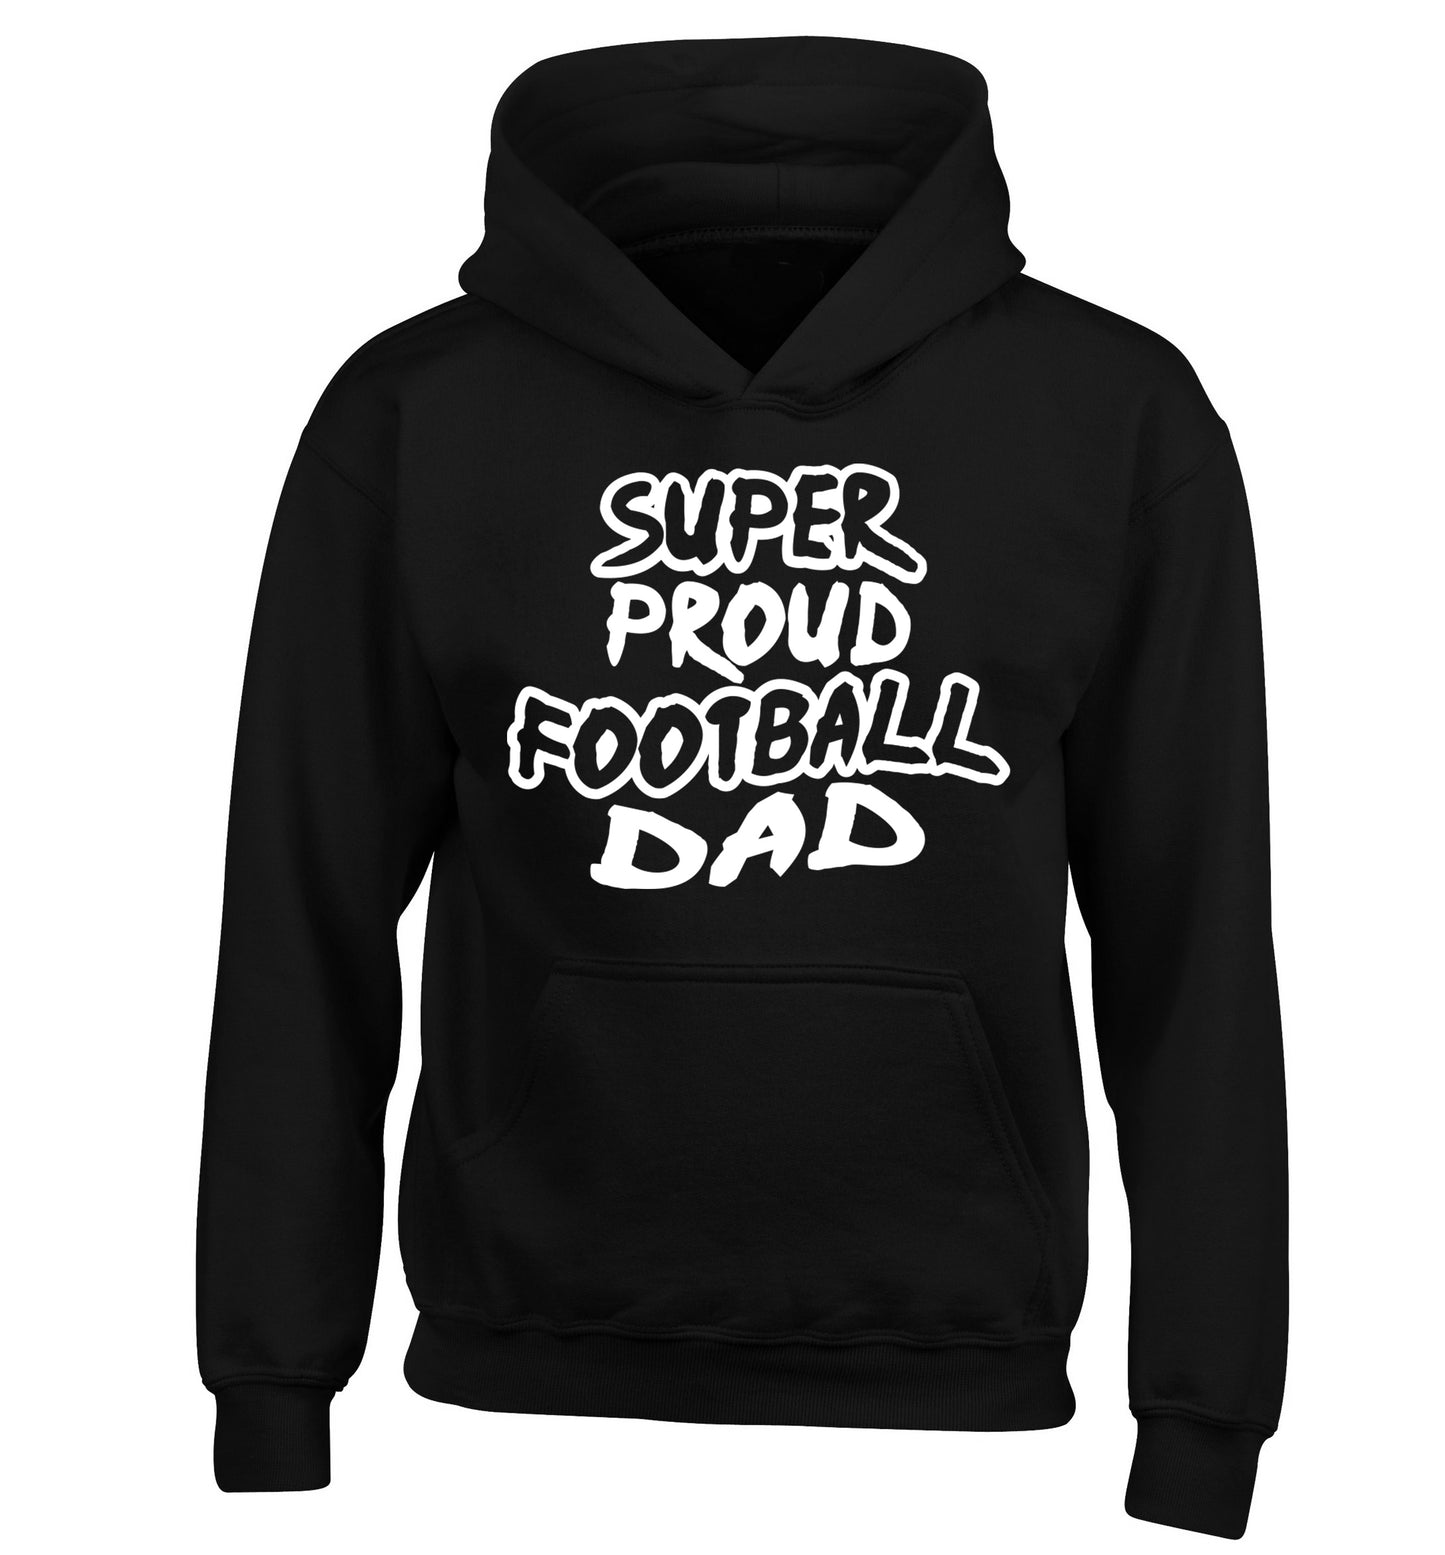 Super proud football dad children's black hoodie 12-14 Years